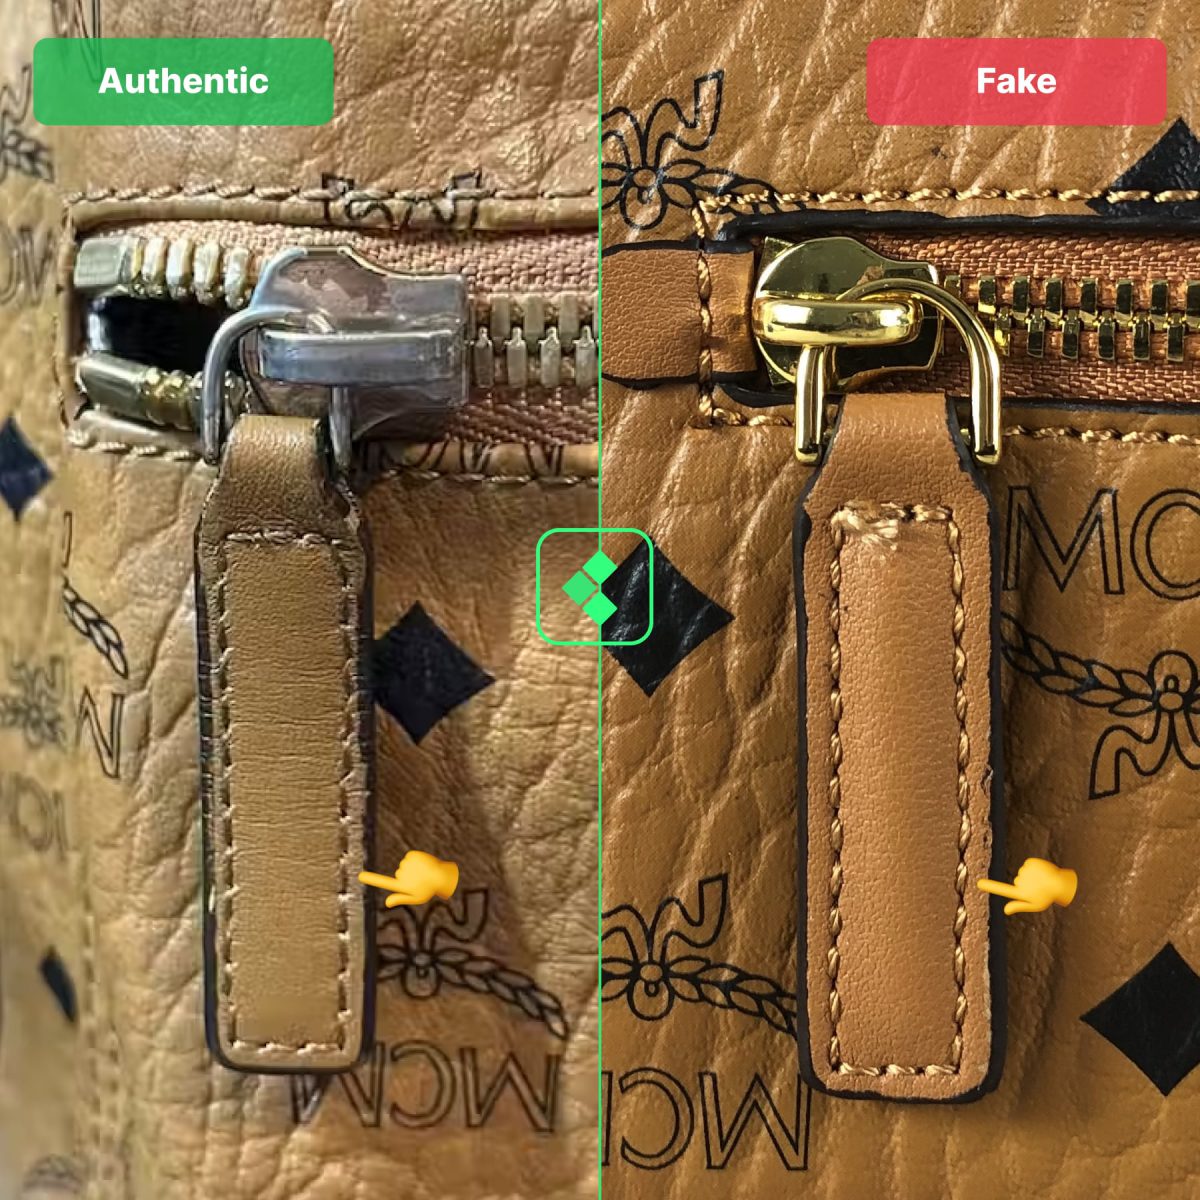 MCM Real Vs Fake Comparison - Zipper